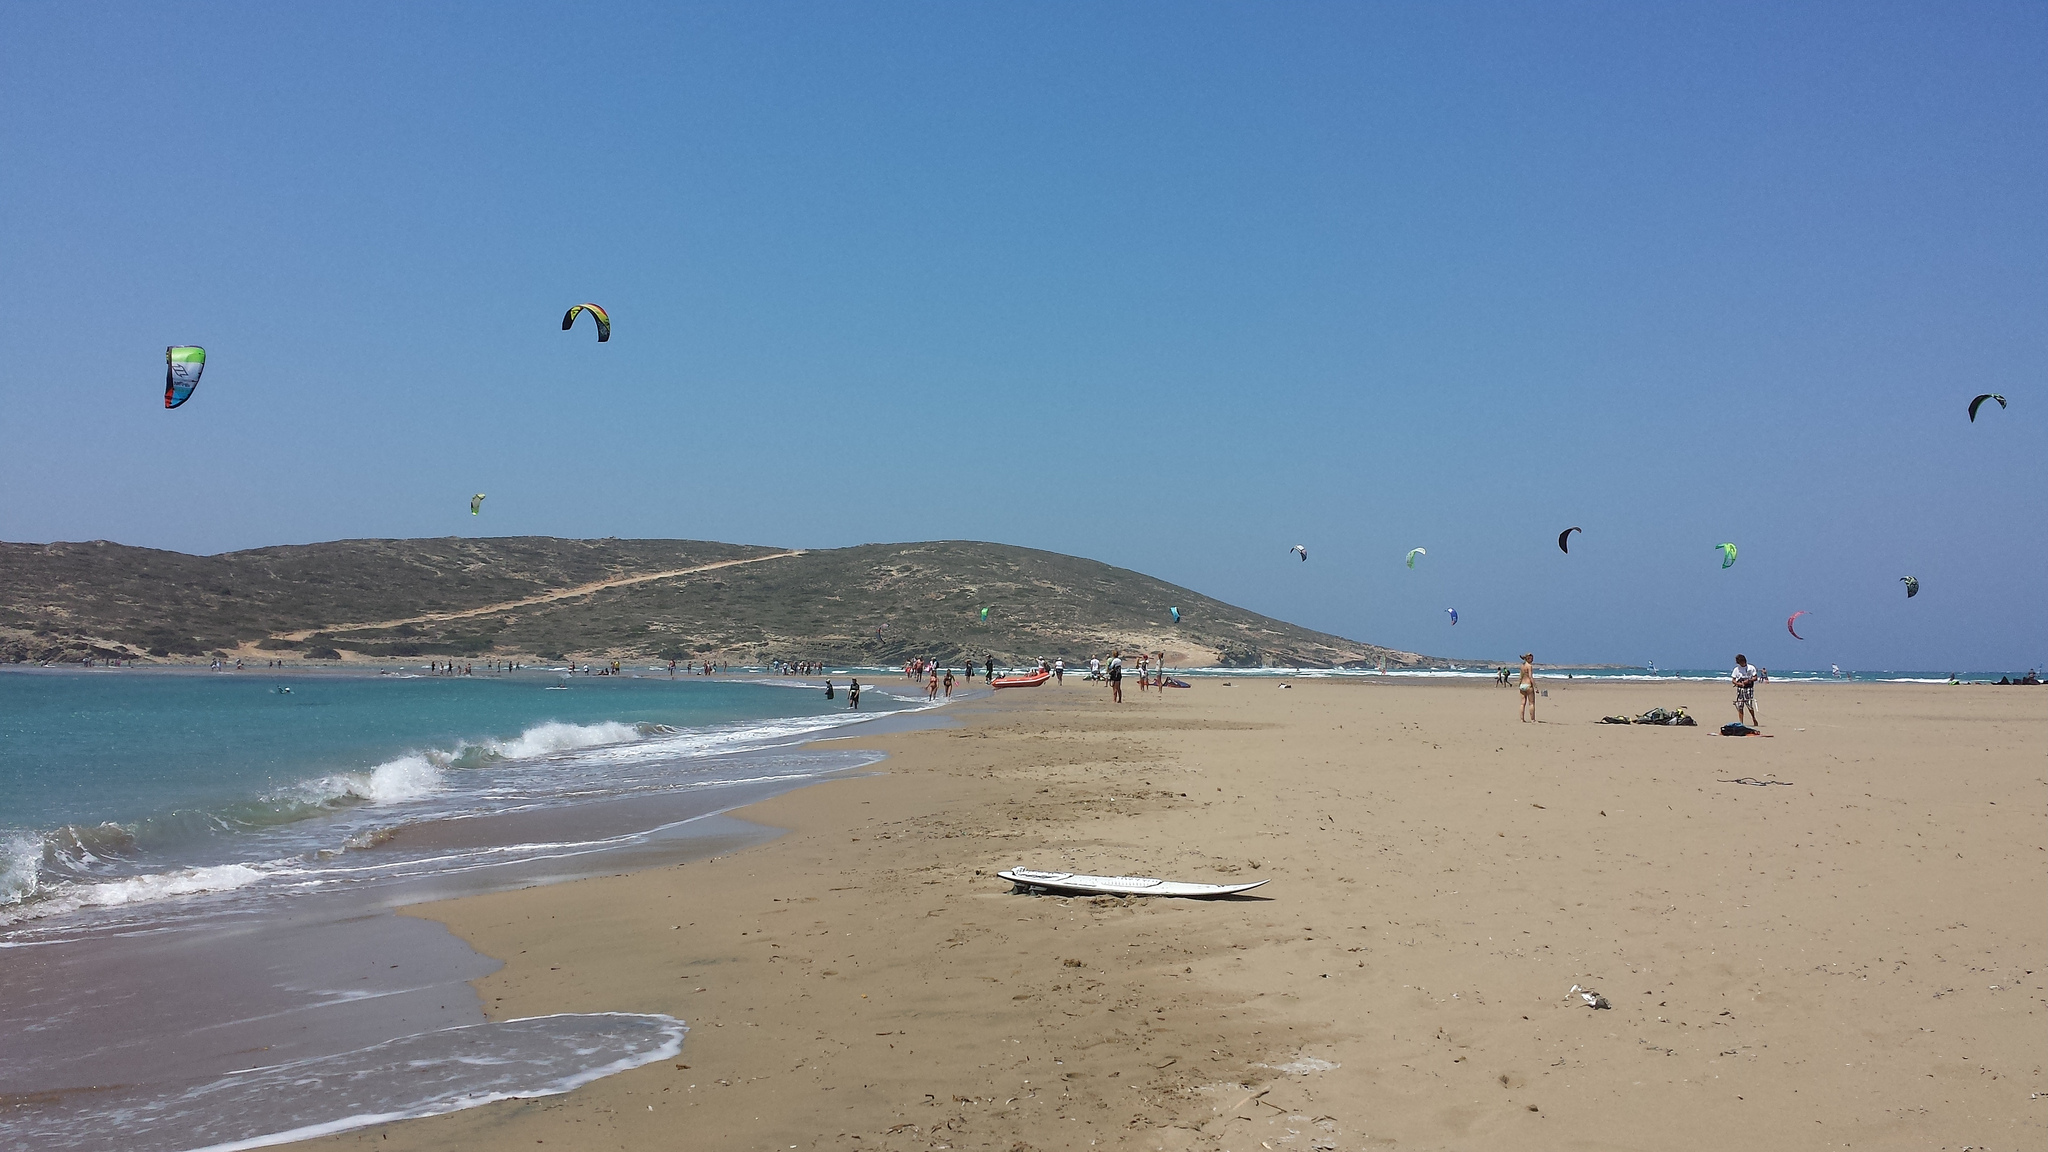 Windsurfing and kitesurfing in Rhodes